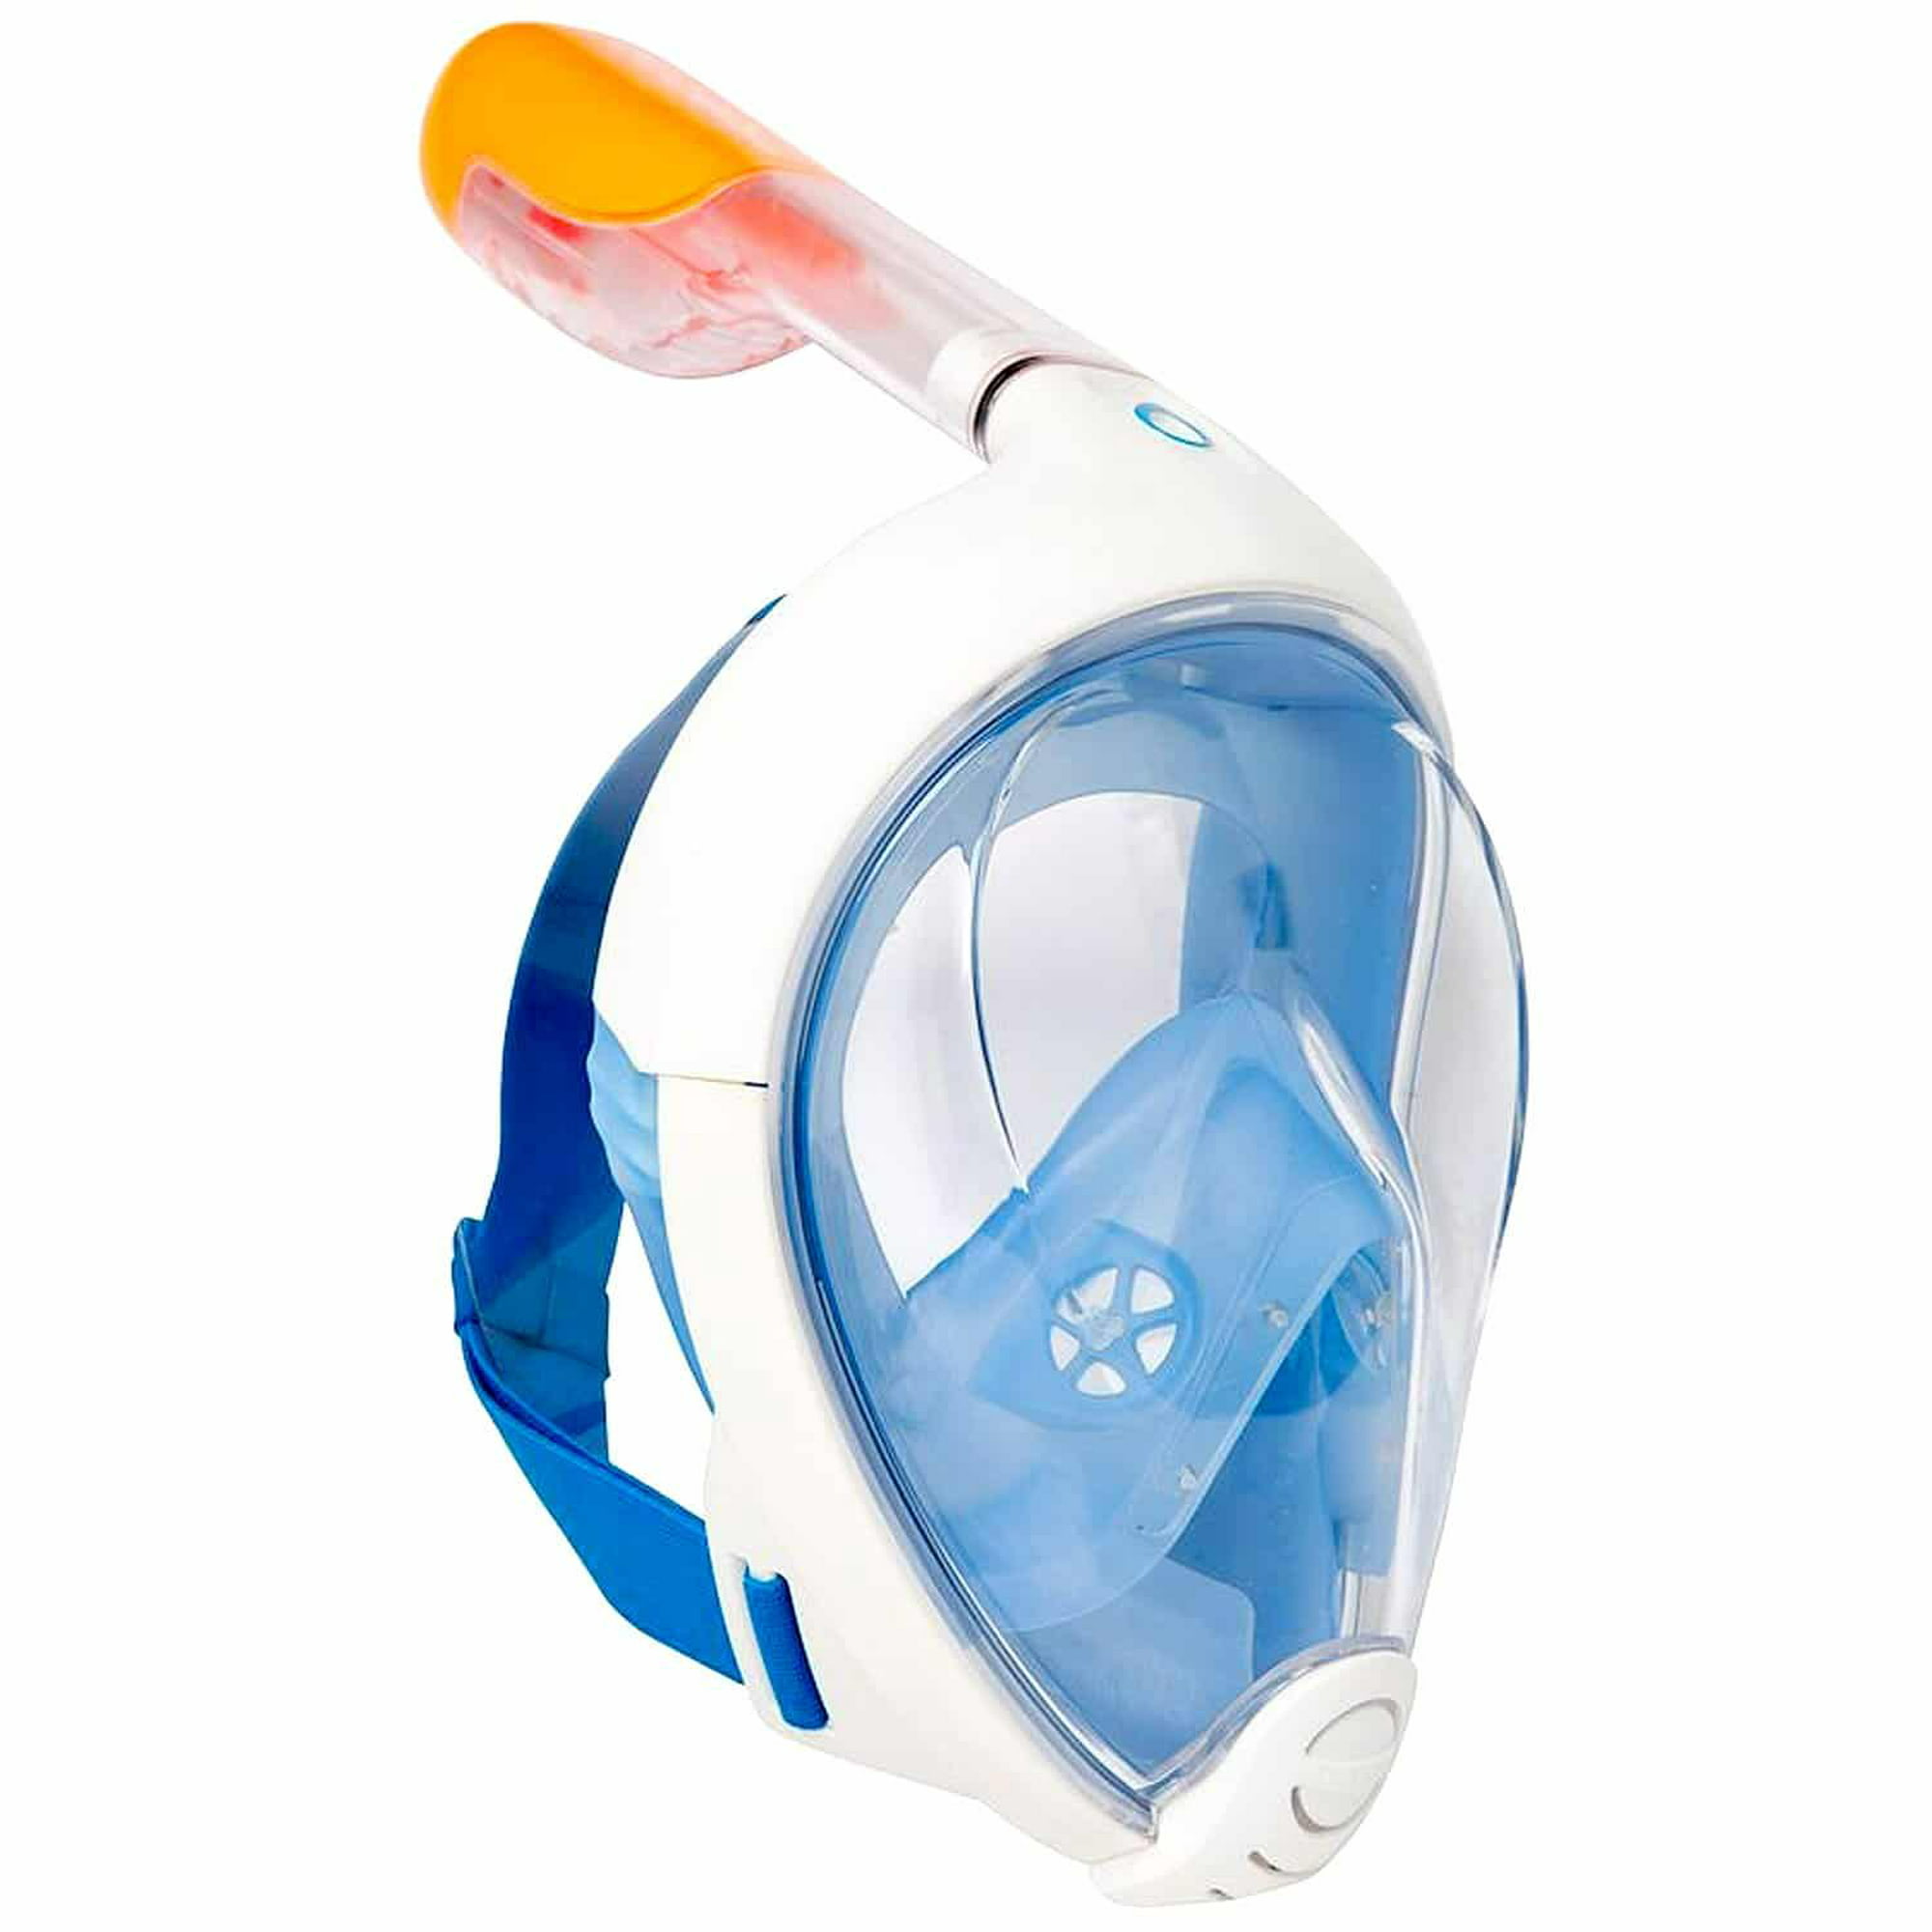 Mascara Snorkel Full Face Azul